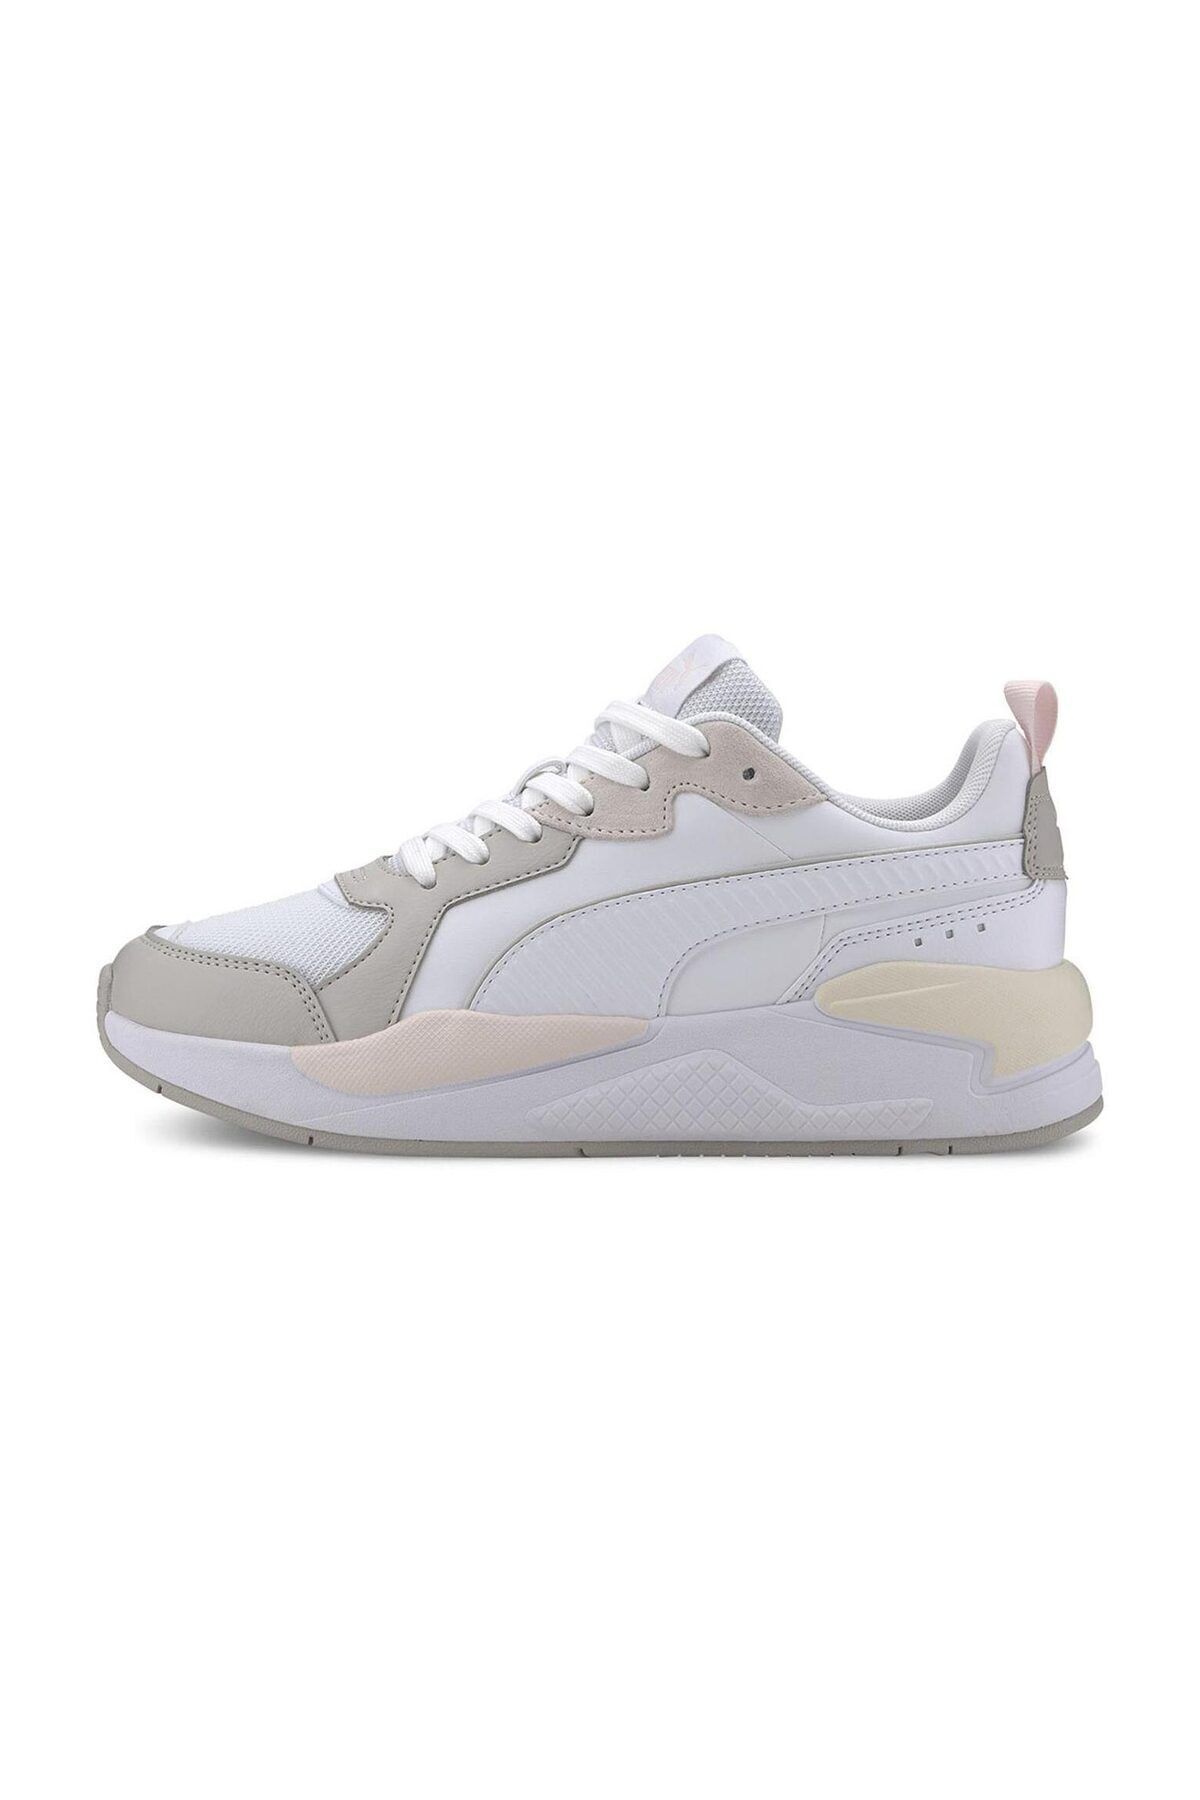 Puma X-RAY GAME Beyaz Kadın Sneaker Ayakkabı 100532366